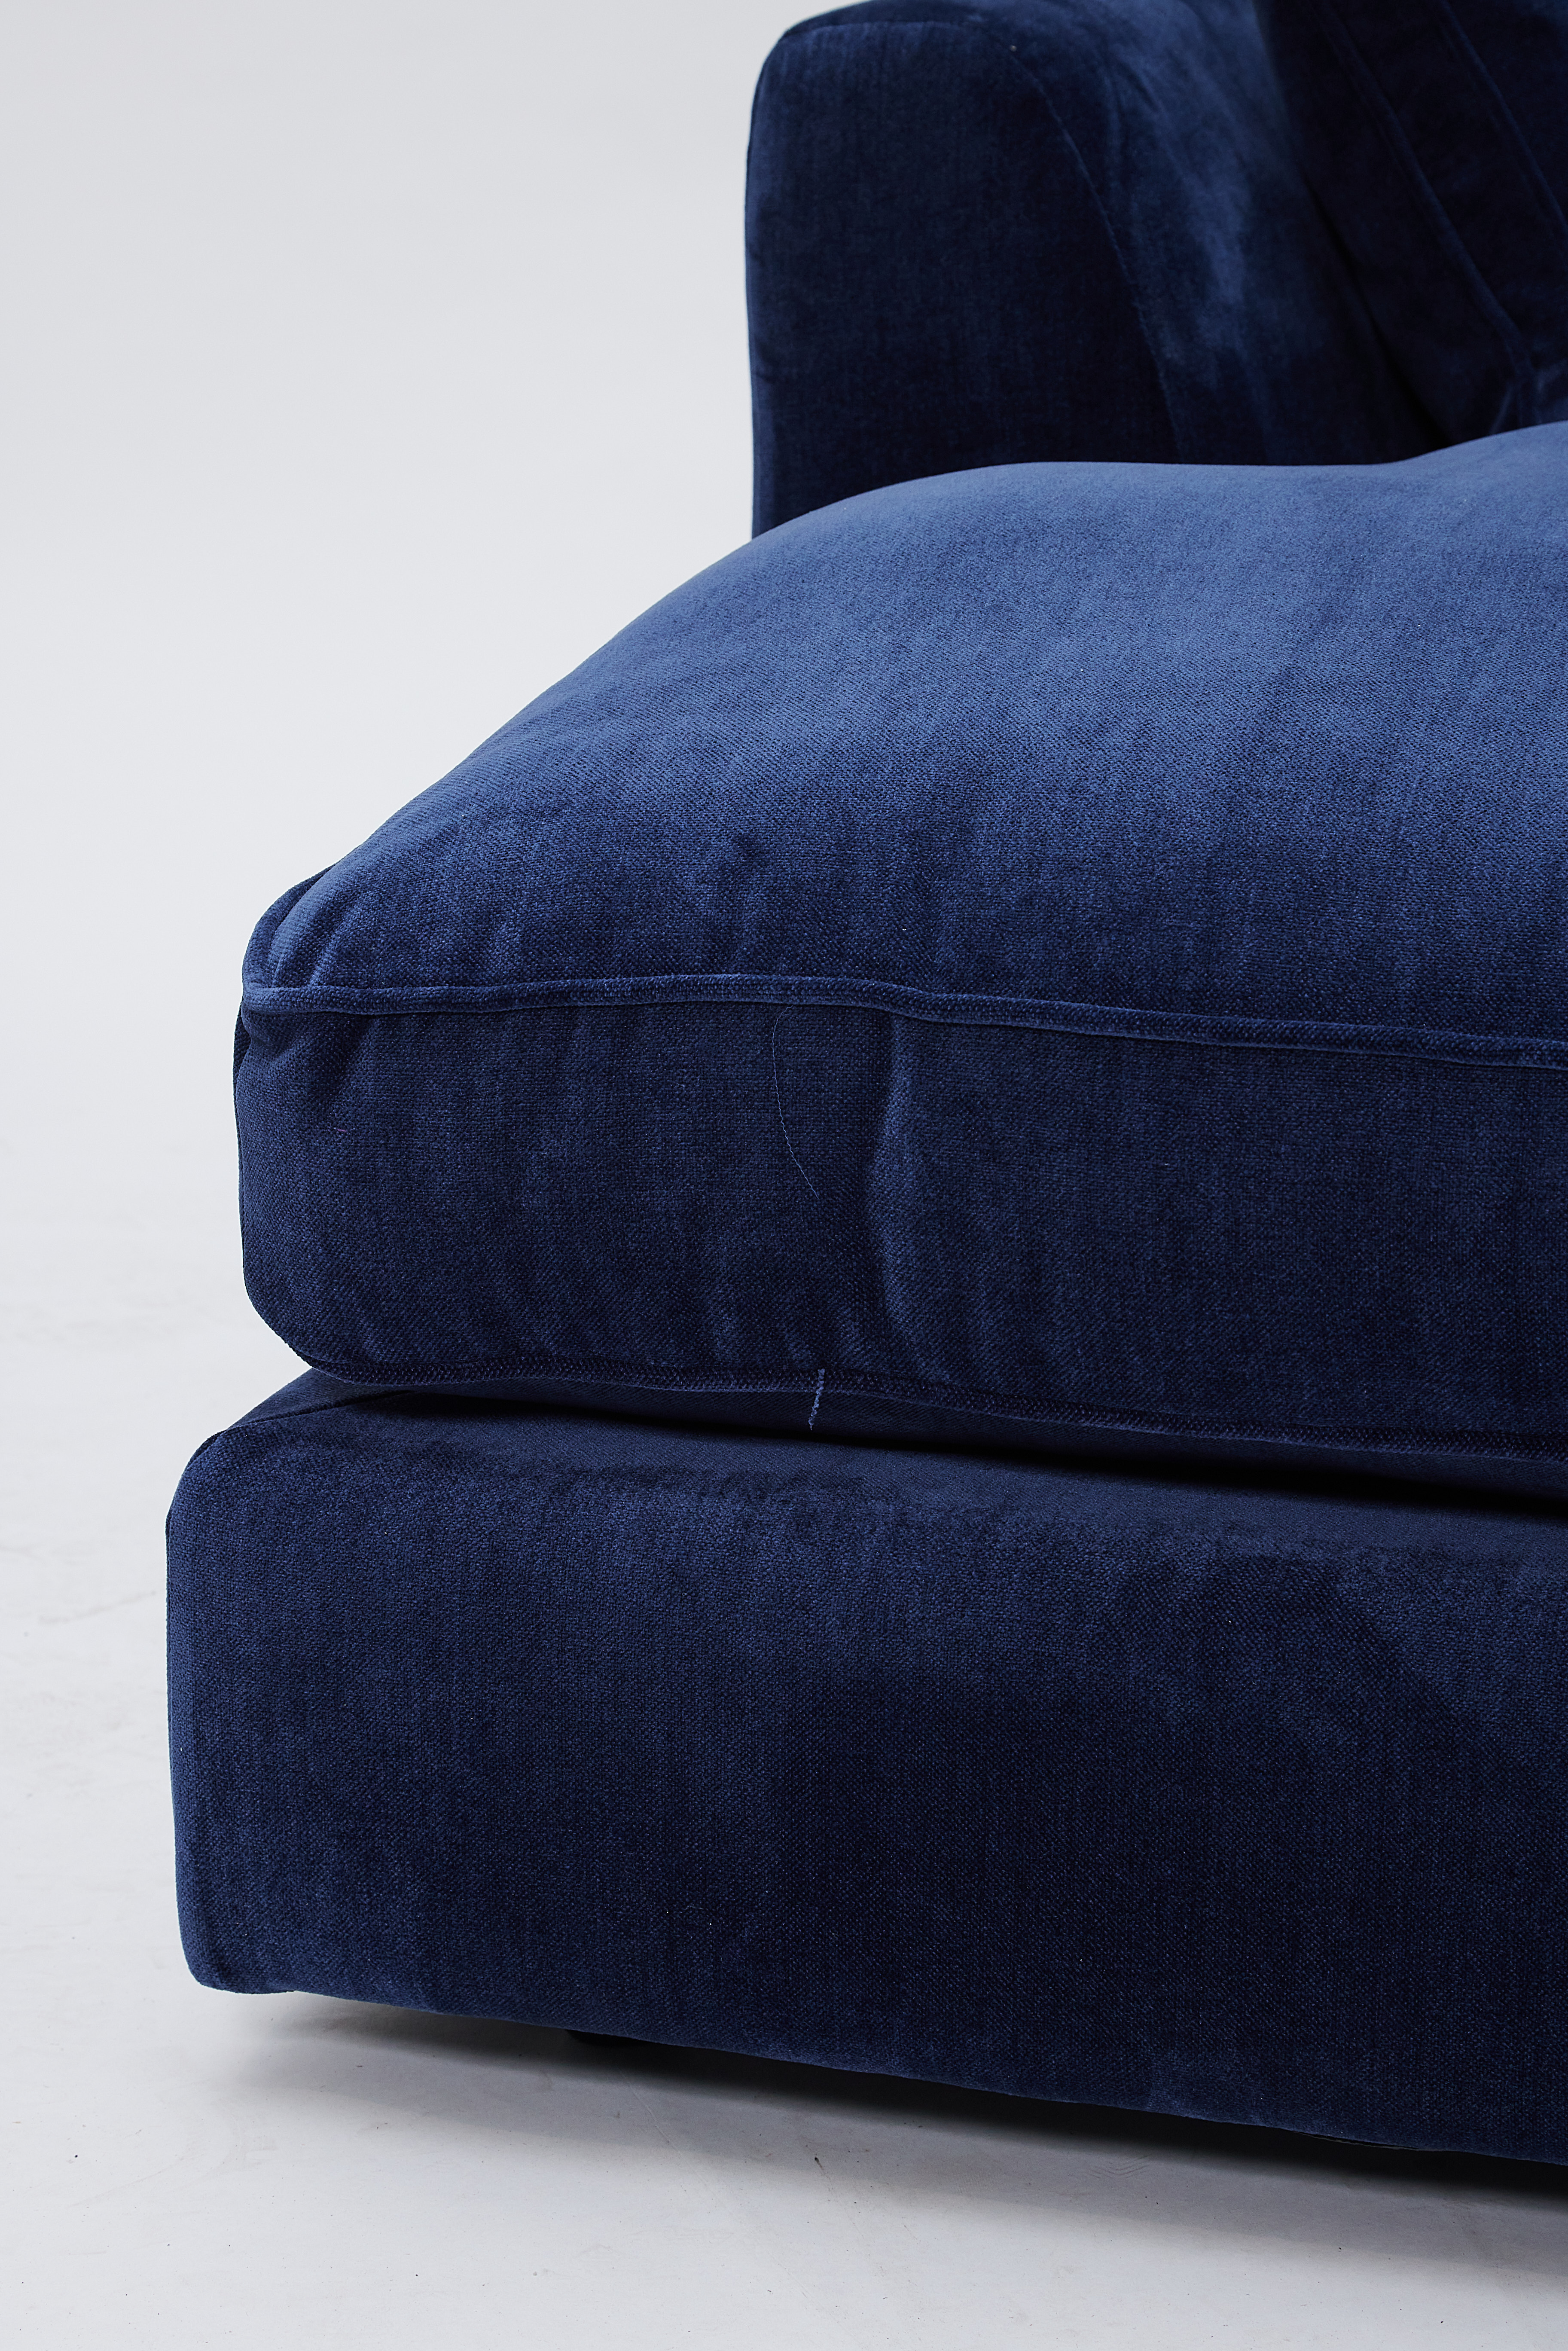 Prescott Large Chaise Sofa - LHF